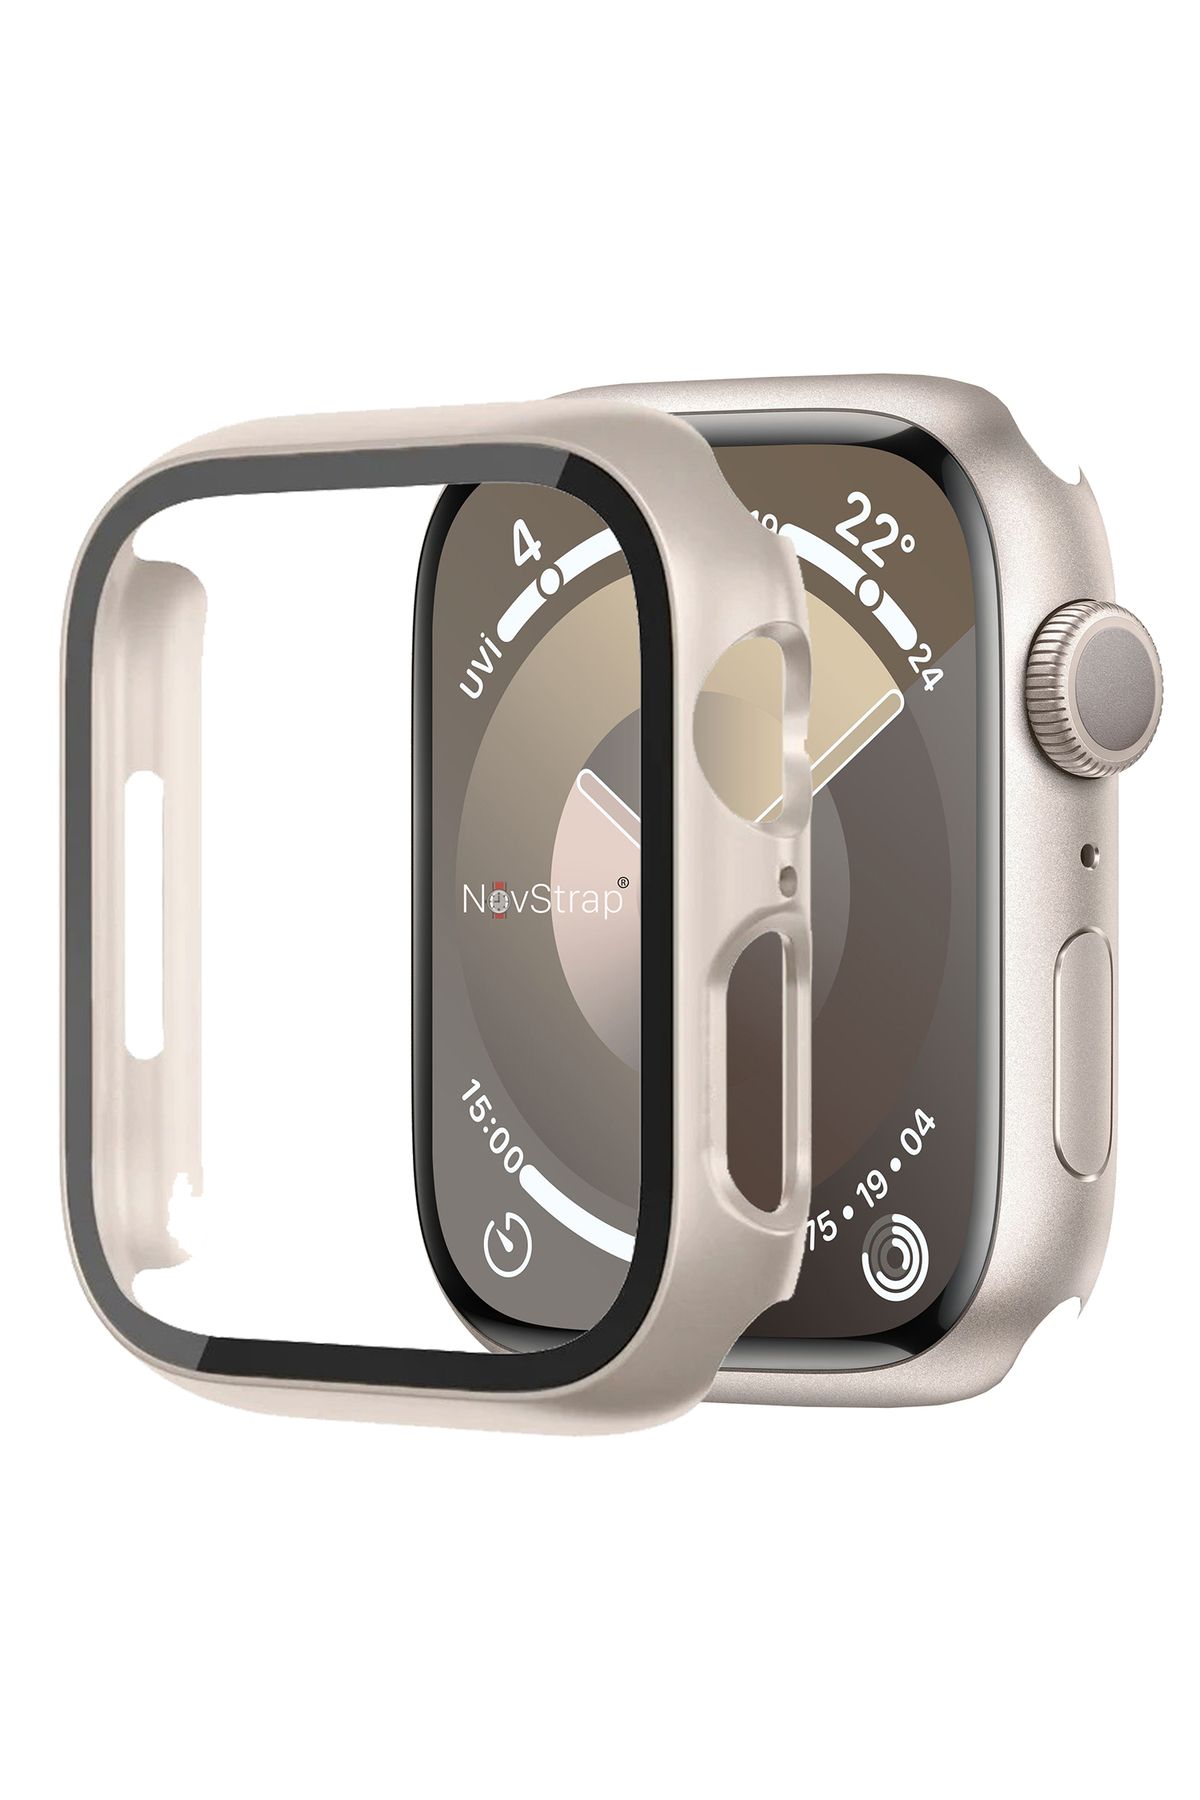 NovStrap Apple Watch 4/5/6/Se Seri 44mm ile Uyumlu Starlight Yıldız Işığı Ekran Kasa Koruyucu Kapak